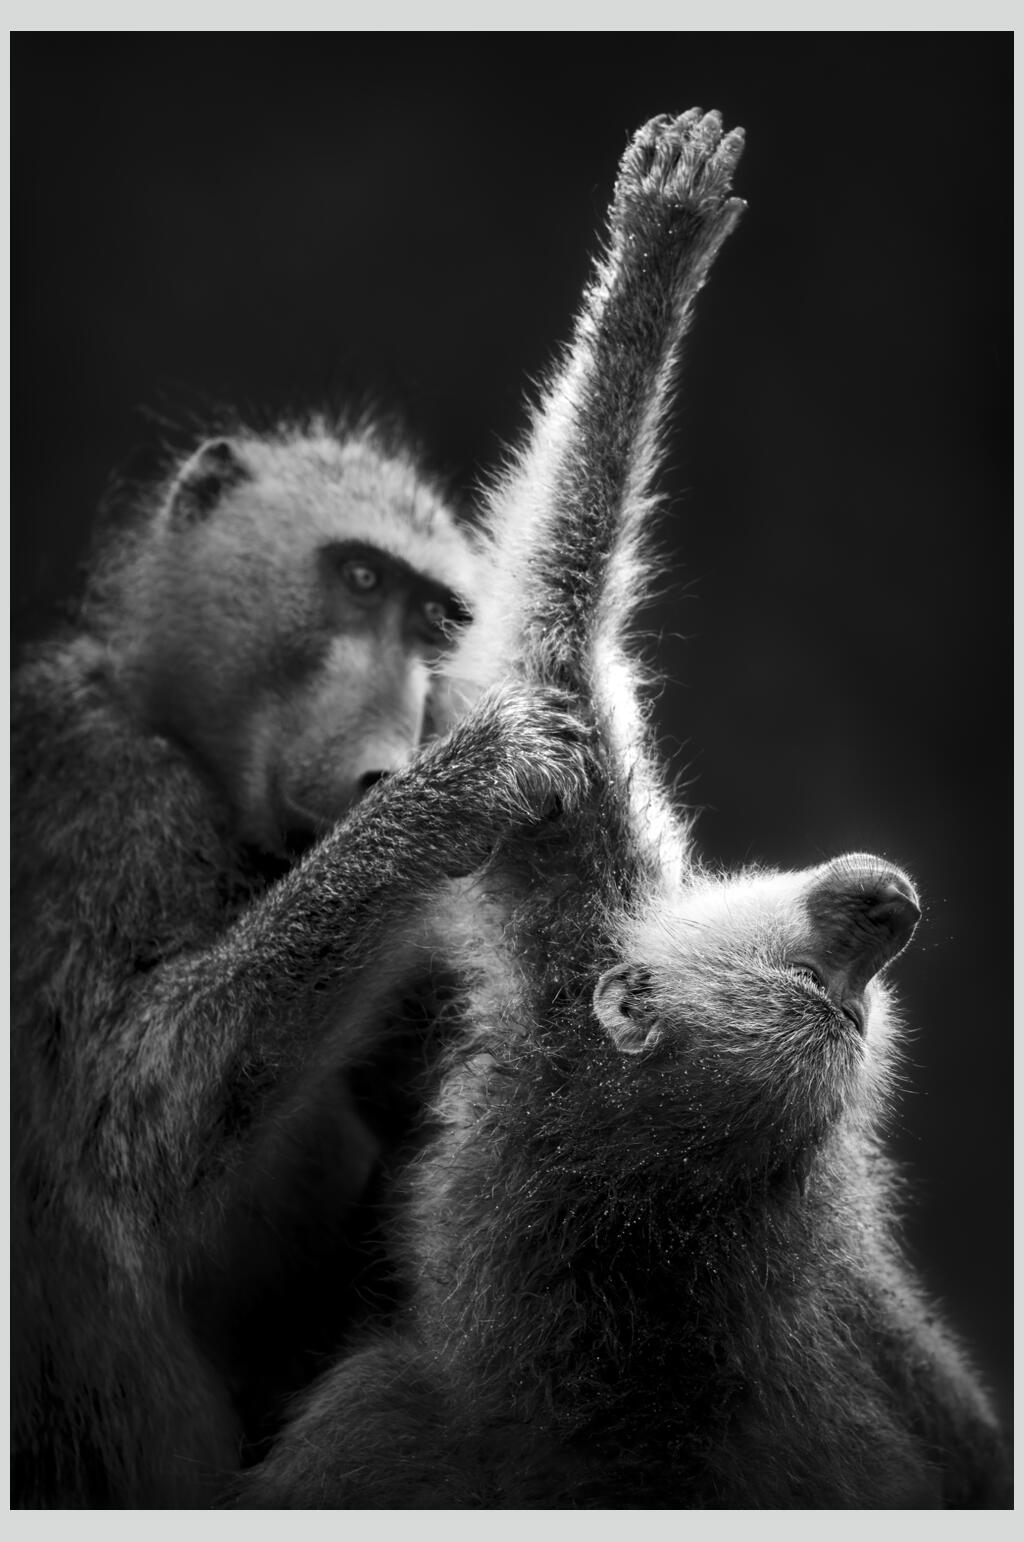 90素材网黑猴子图片